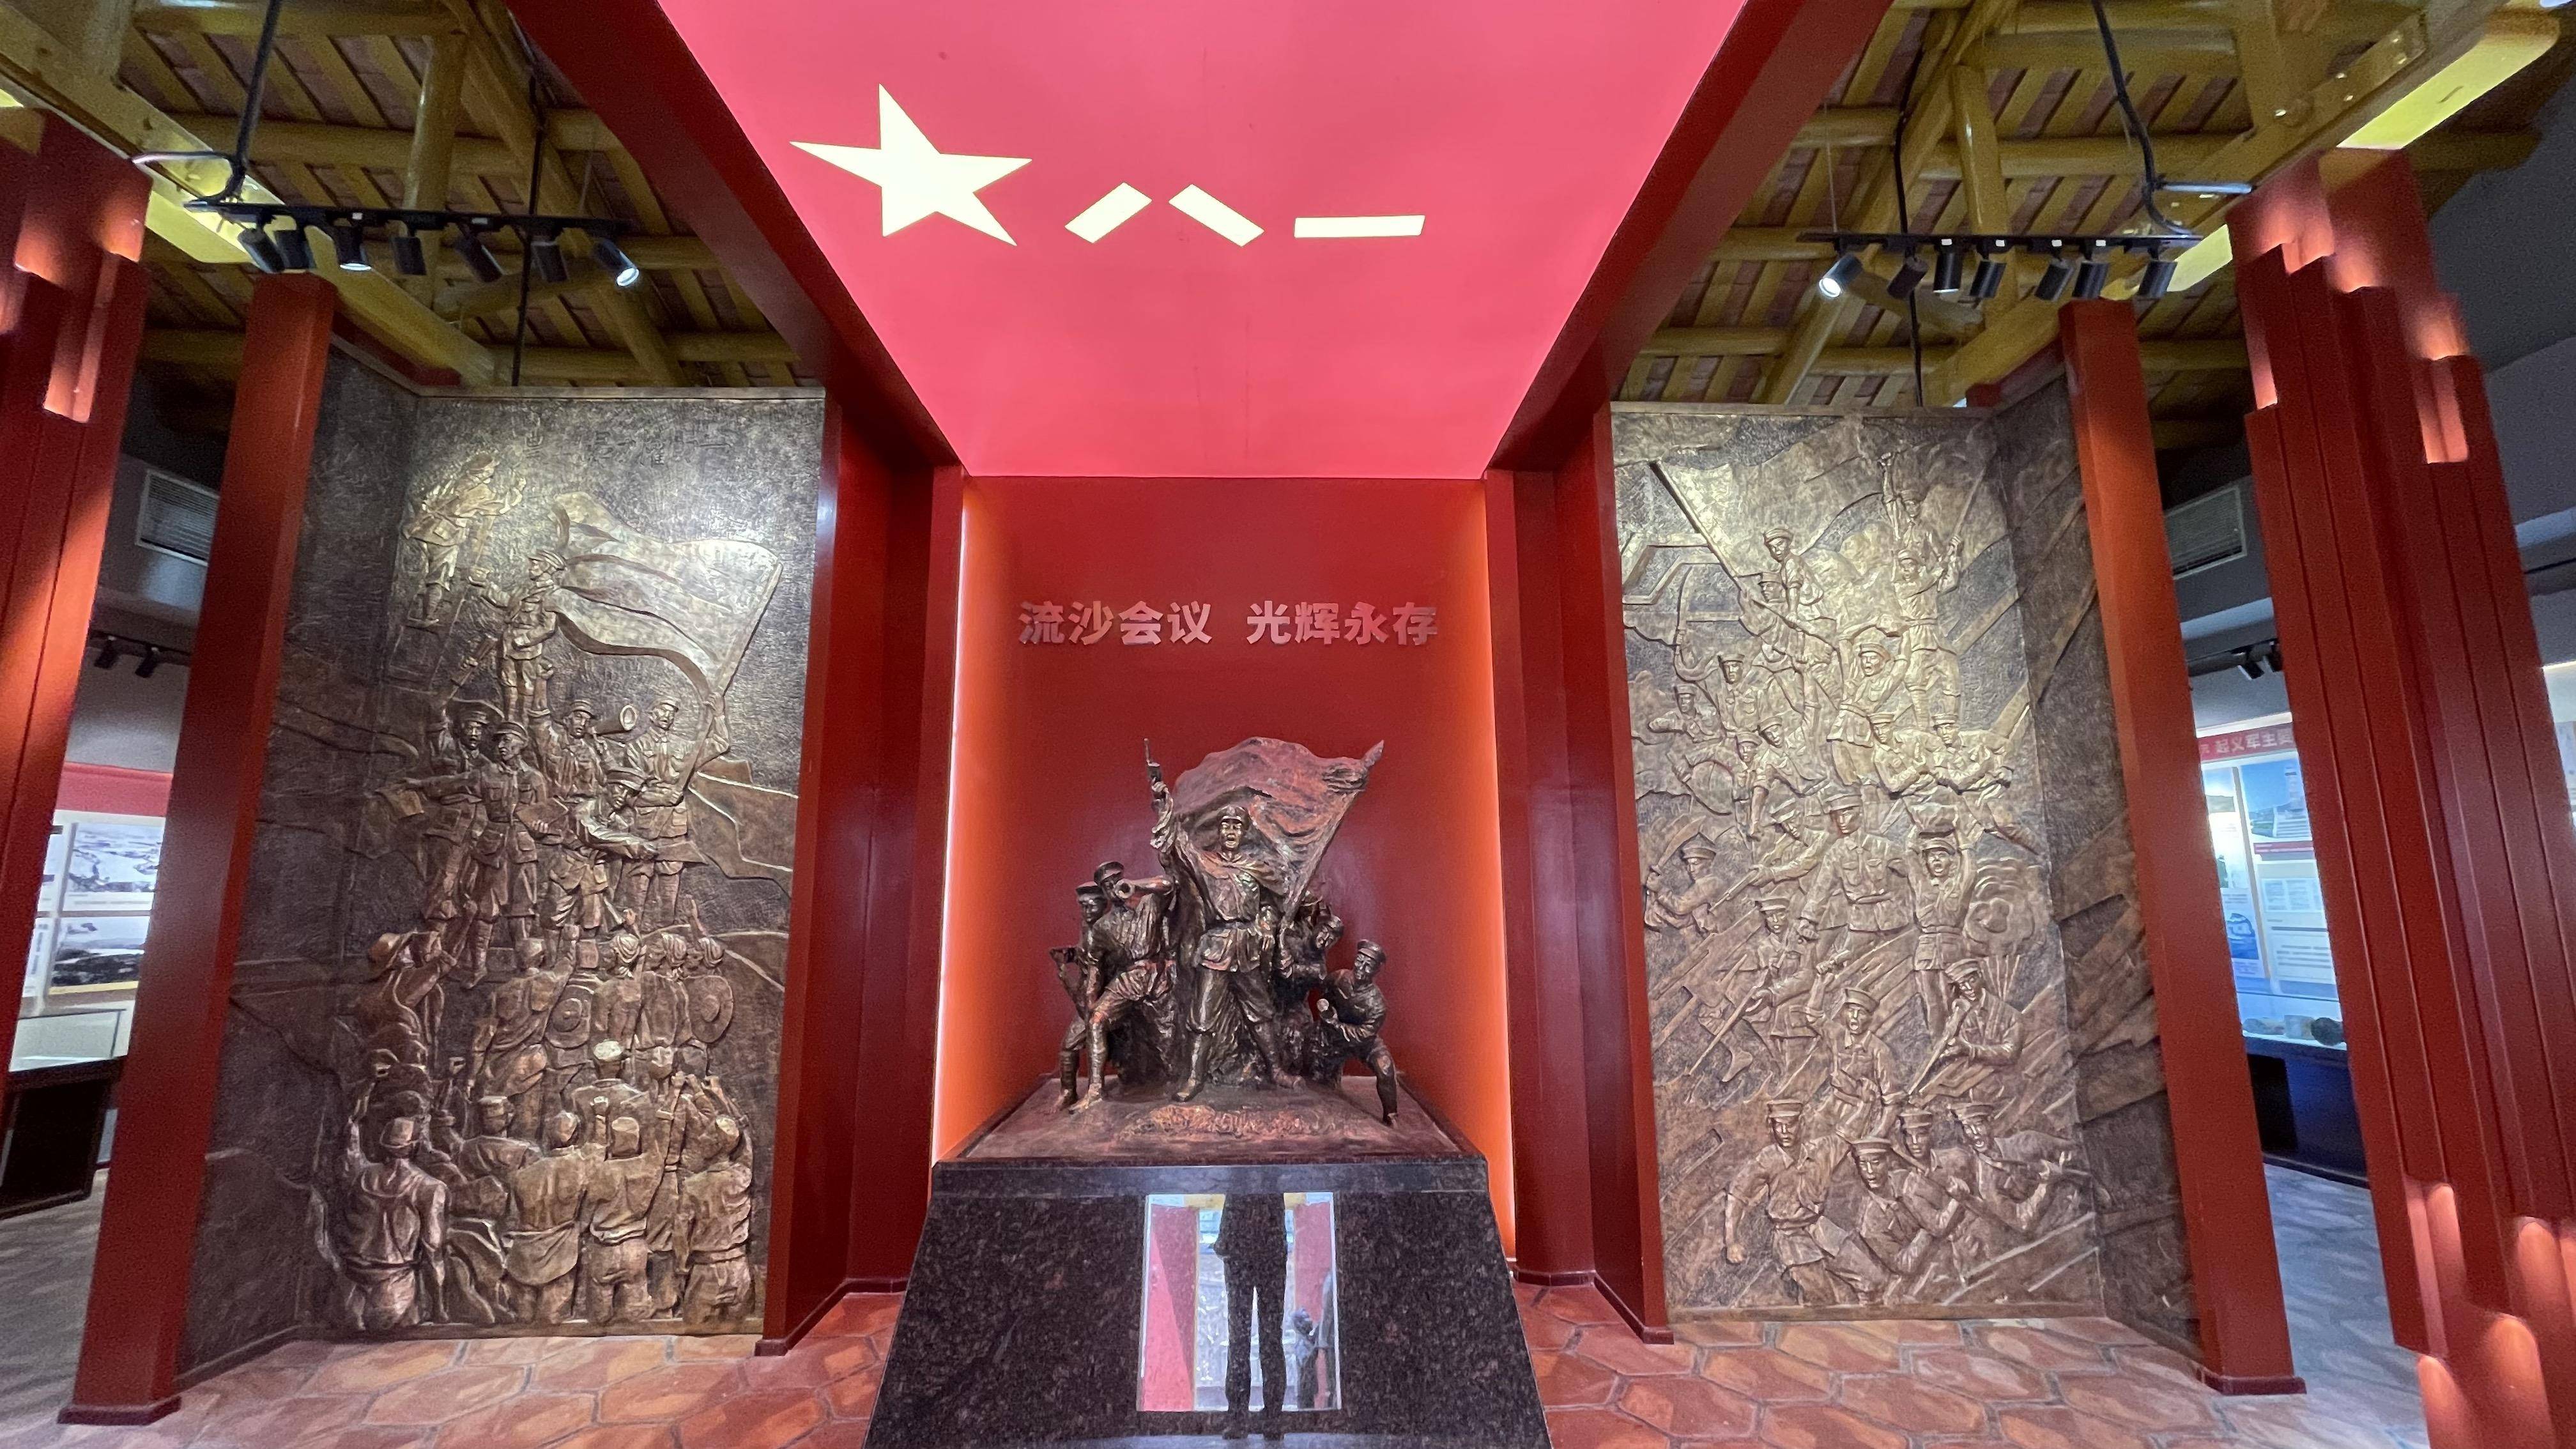 位于粤东地区的普宁为革命根据地遍布着许多红色印迹,寻访红色足迹